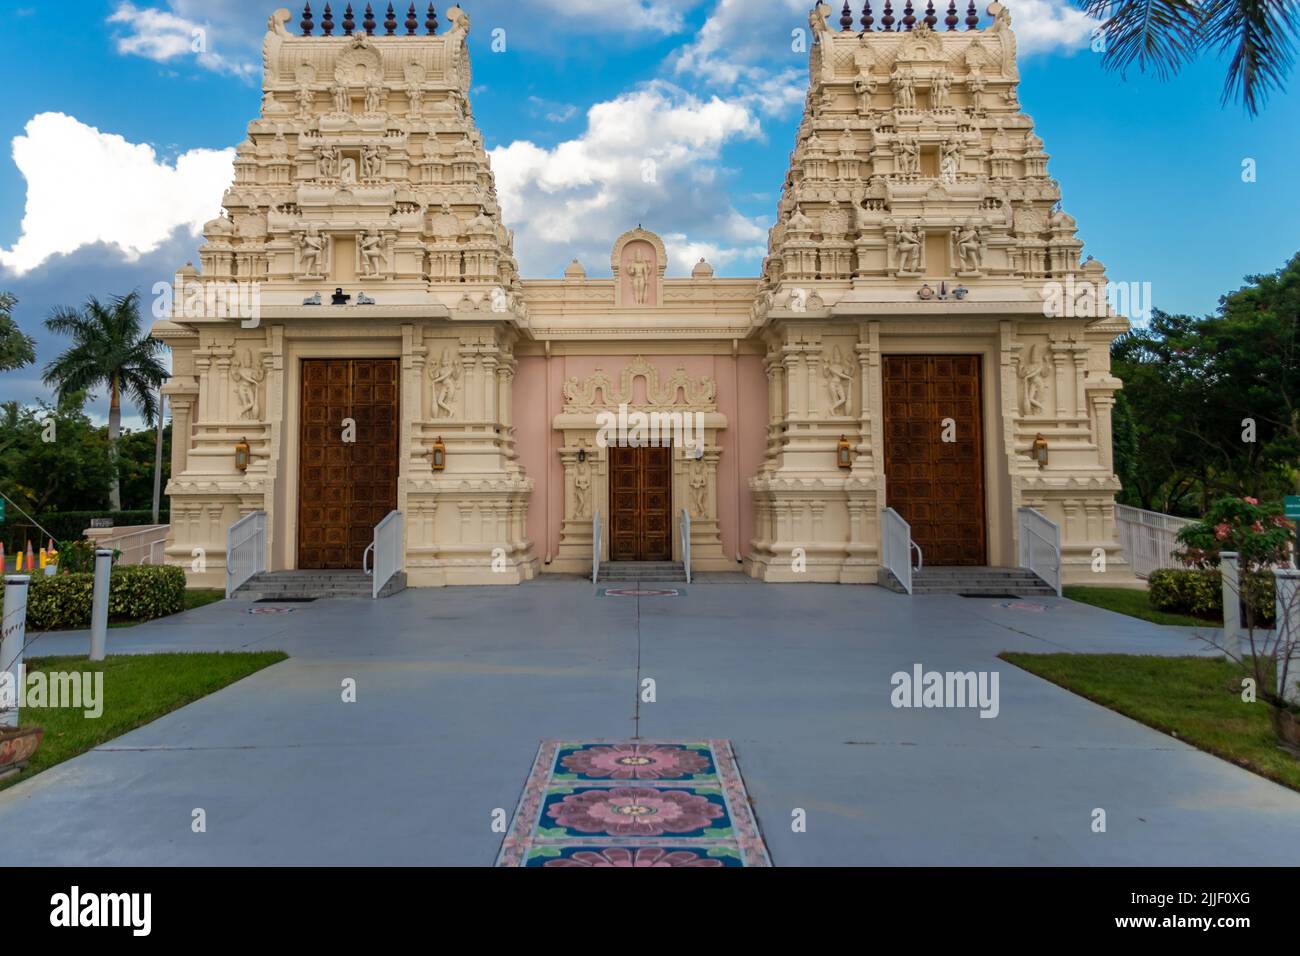 Le temple Shiva Vishnu de Floride du Sud est composé de deux bâtiments, un temple traditionnel et une salle communautaire pouvant accueillir jusqu'à 300 personnes. Banque D'Images